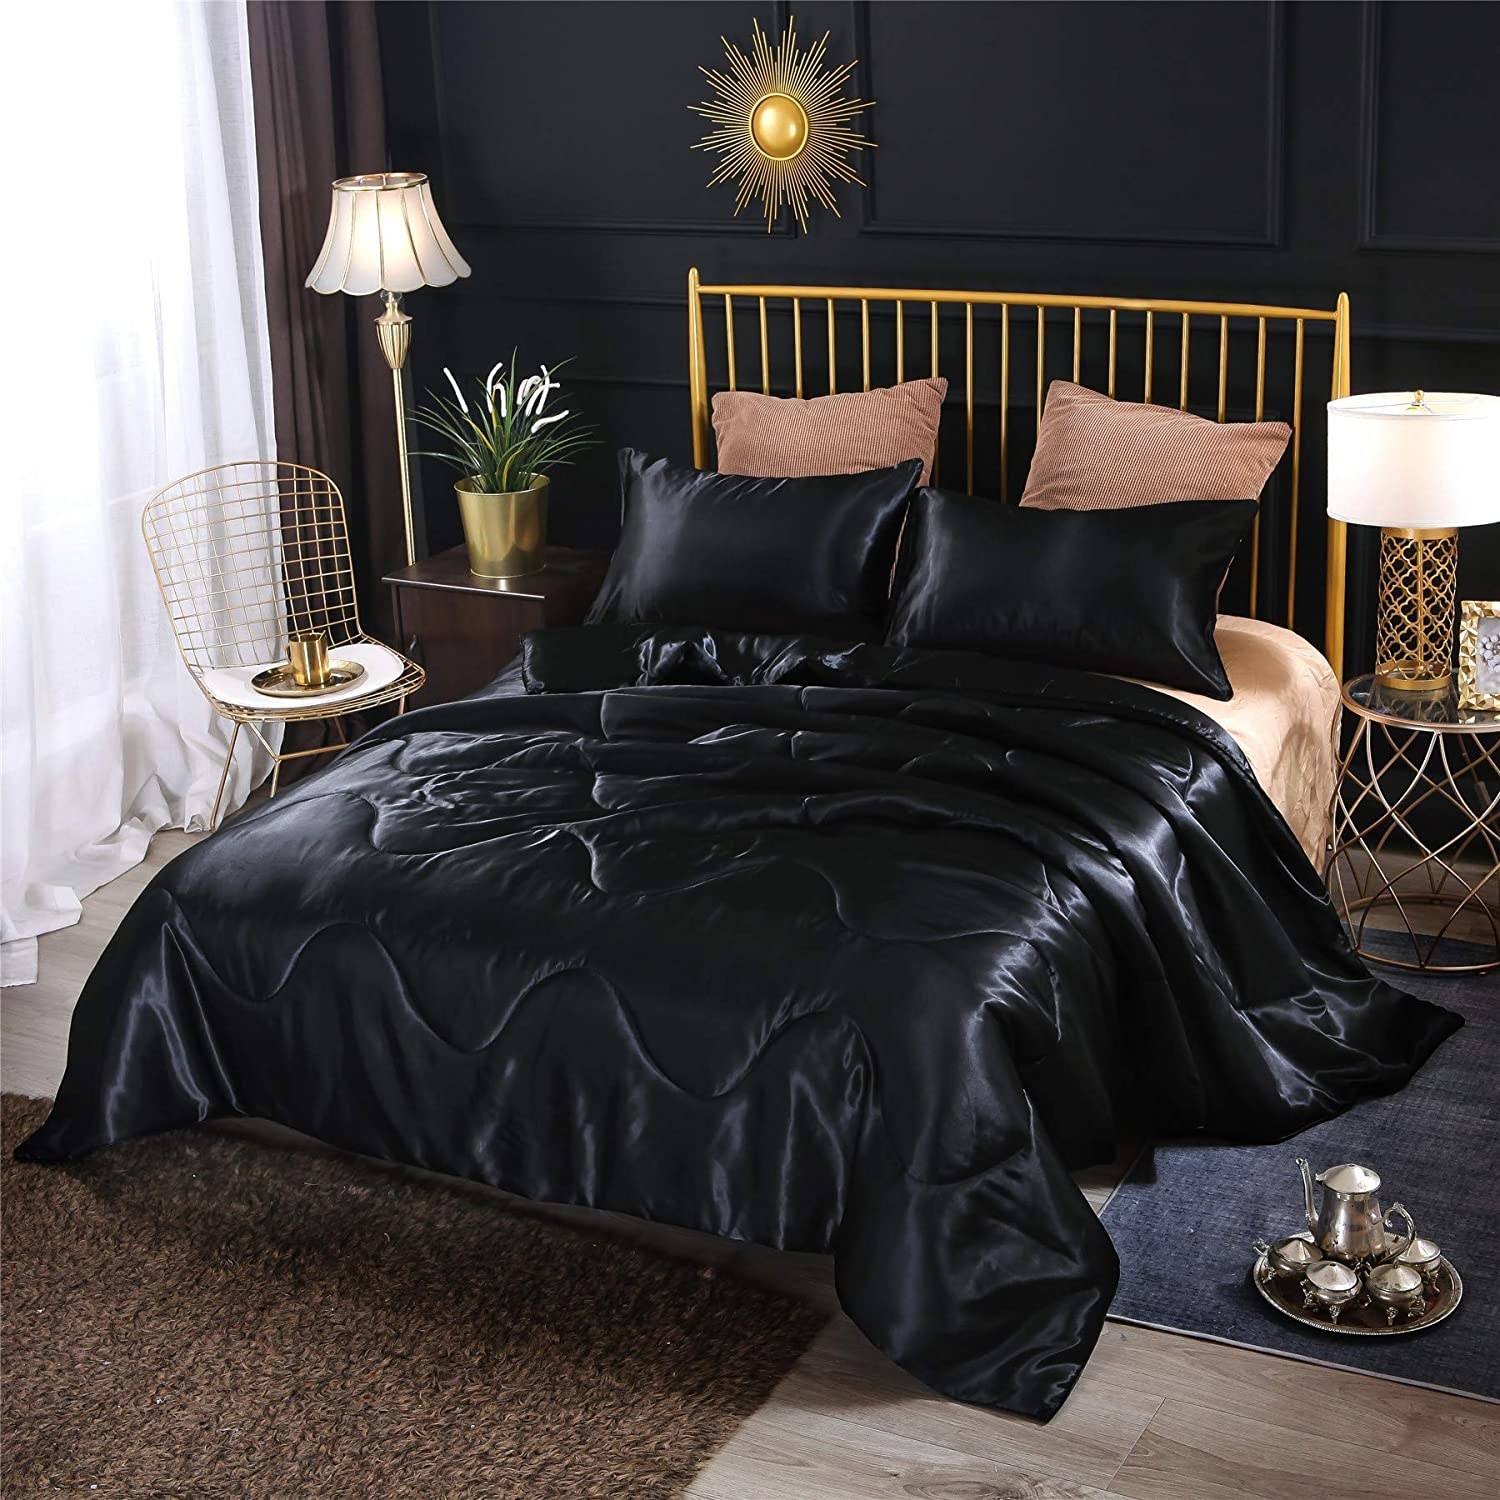 Black comforter on mattress in bedroom